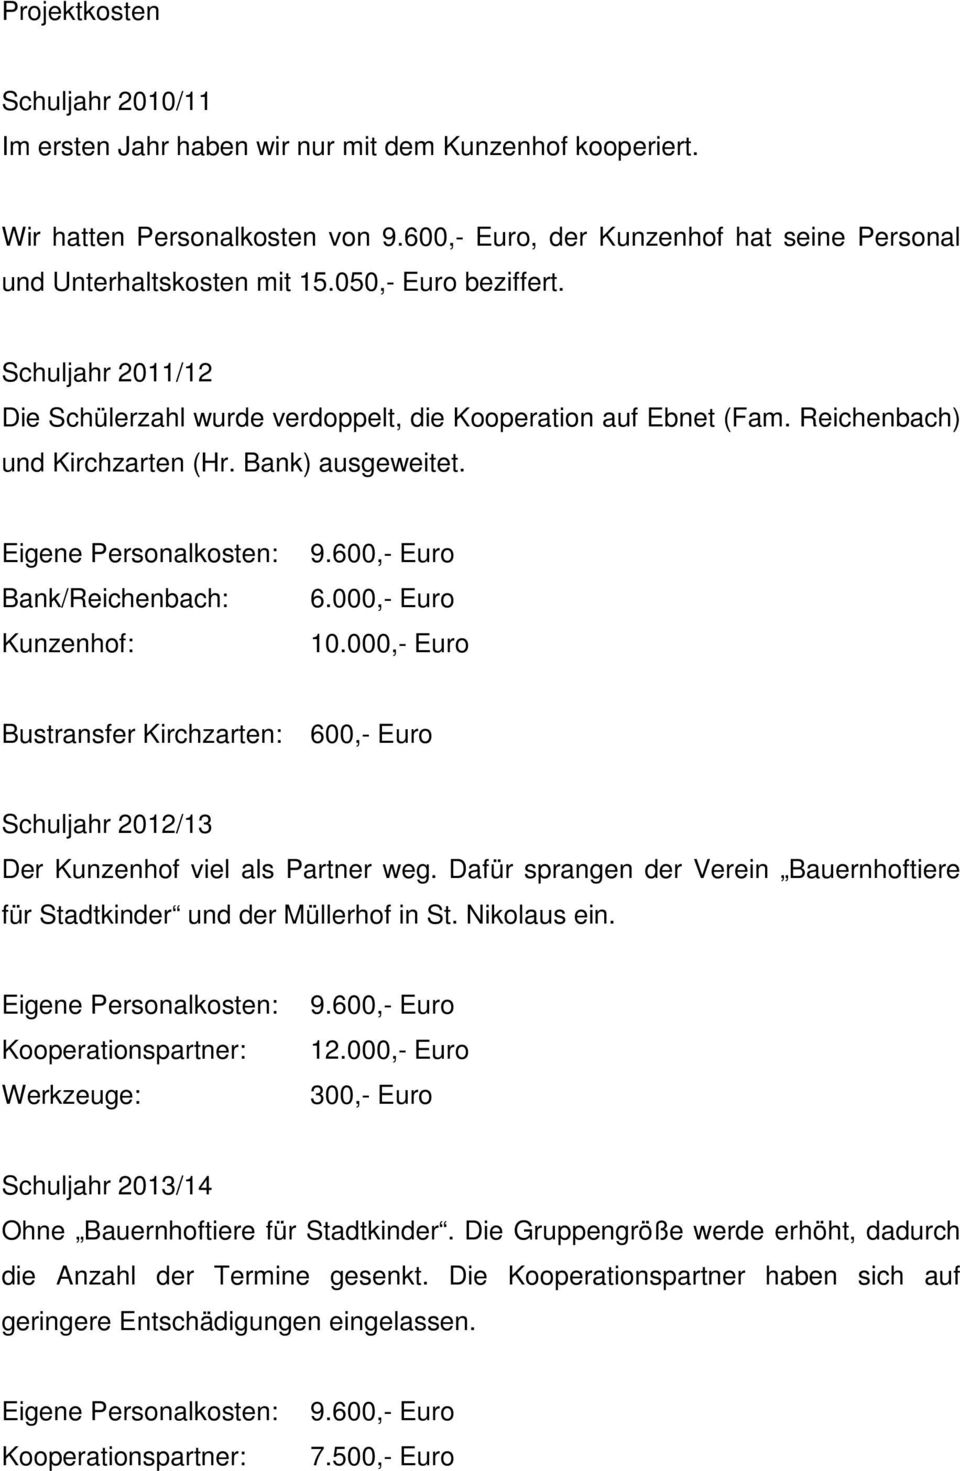 Eigene Personalkosten: Bank/Reichenbach: Kunzenhof: 9.600,- Euro 6.000,- Euro 10.000,- Euro Bustransfer Kirchzarten: 600,- Euro Schuljahr 2012/13 Der Kunzenhof viel als Partner weg.